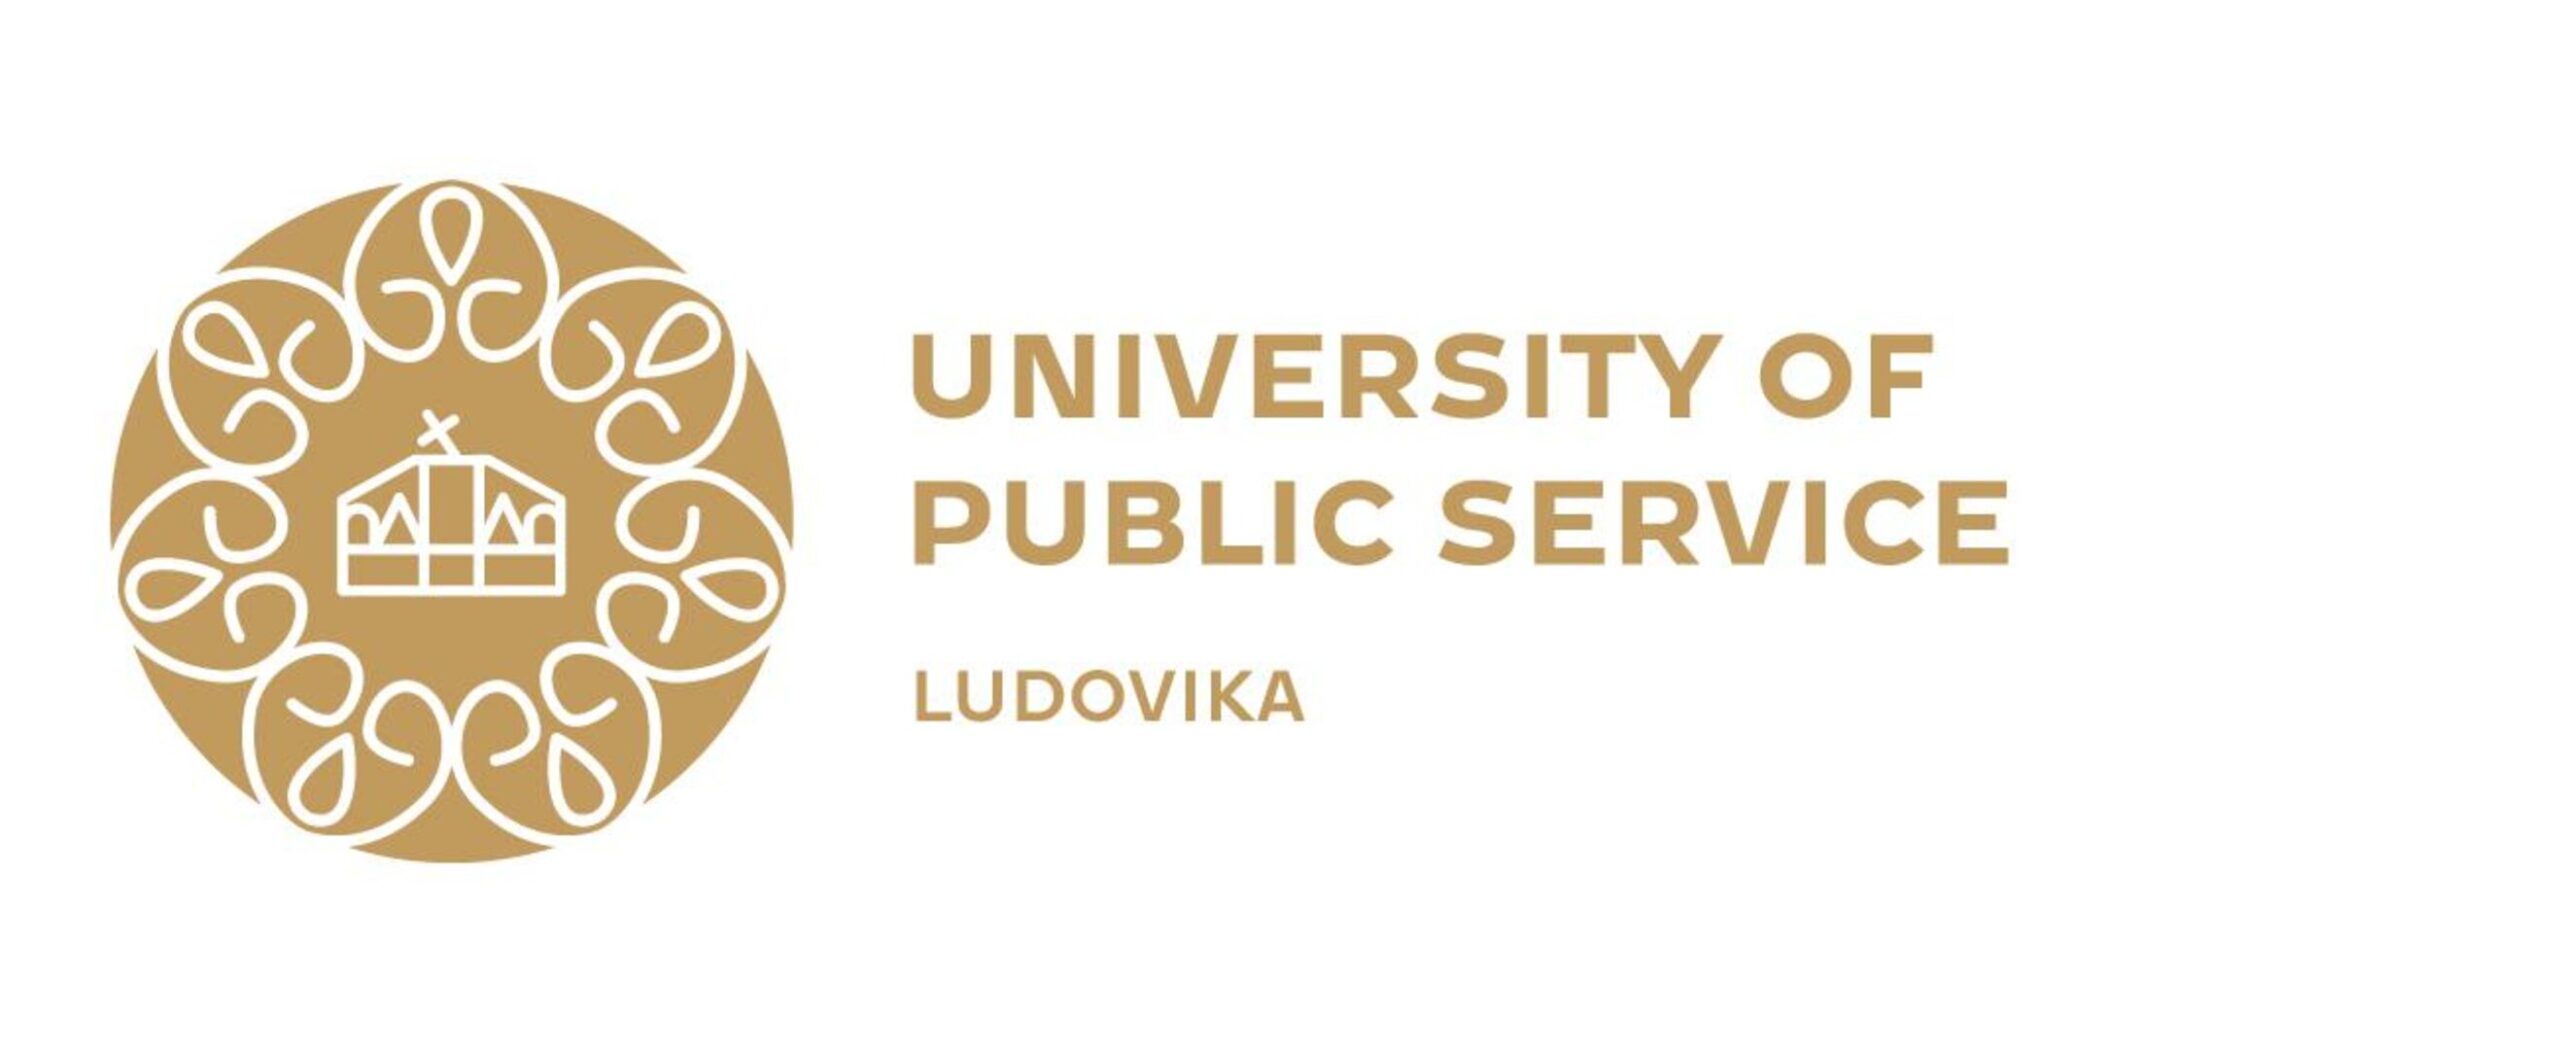 Ambasada Ungariei în Republica Moldova informează despre Programul de Burse al Universității de Servicii Publice Ludovika, Ungaria pentru lectorii internaționali invitați.